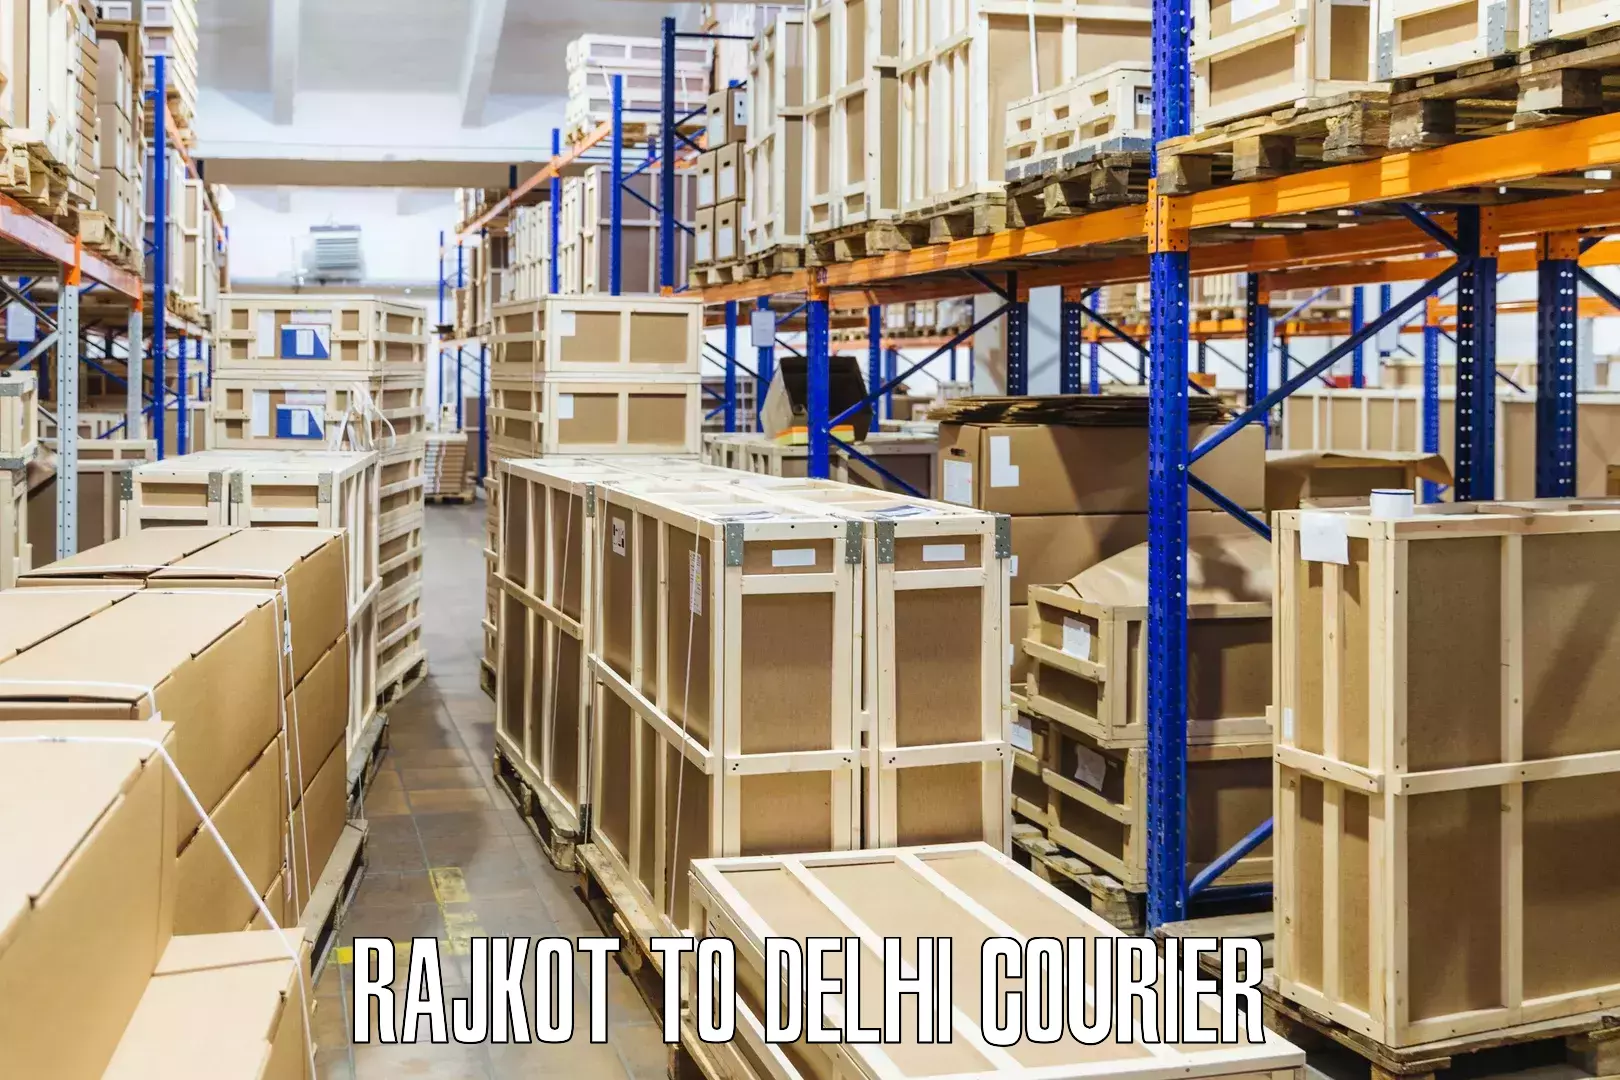 Discount courier rates Rajkot to Delhi